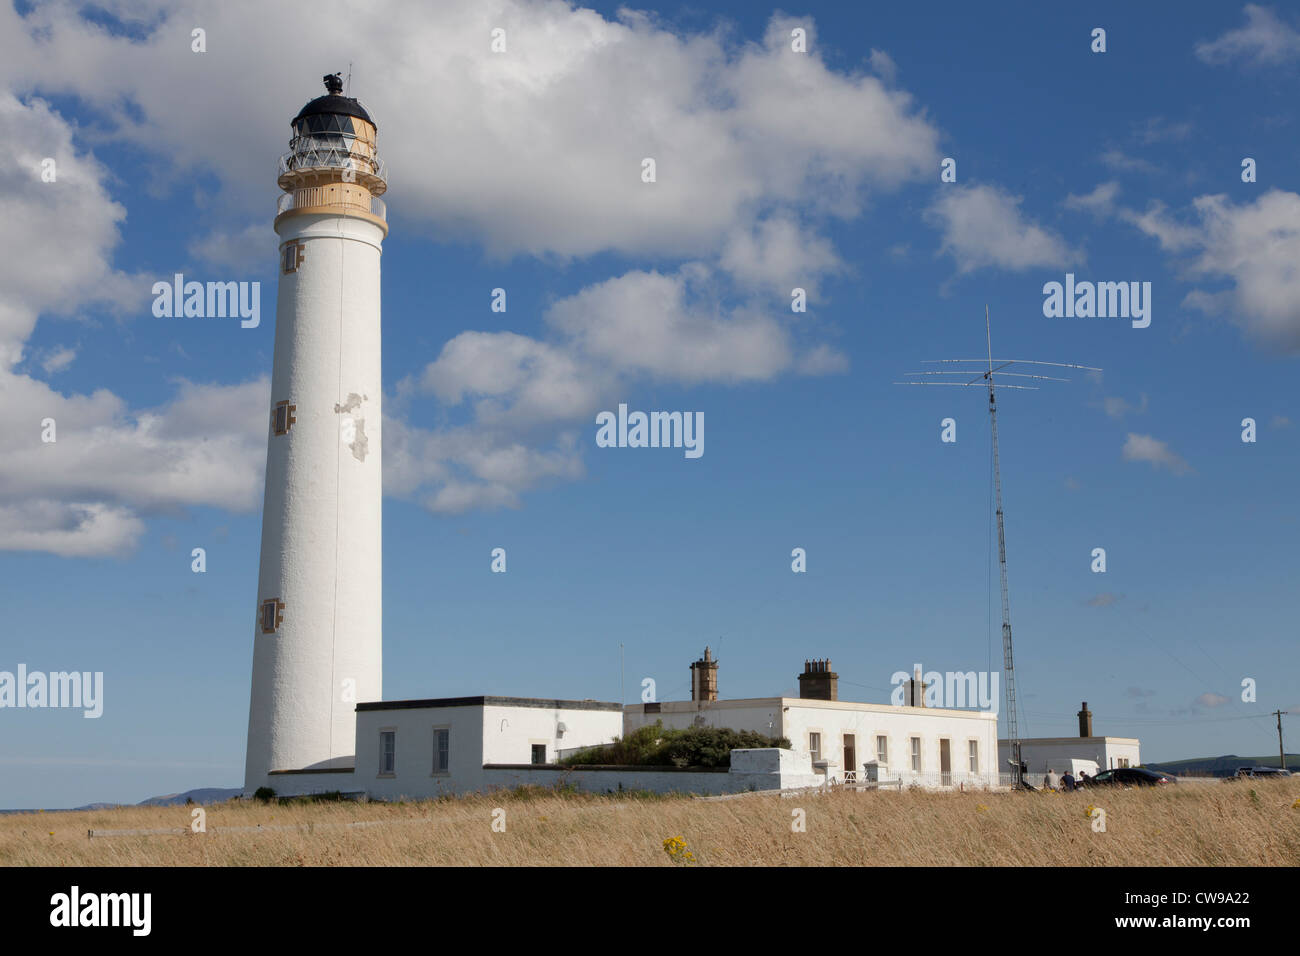 Barn's Ness lighthouse, near Dunbar, Lothian, Scotland Stock Photo